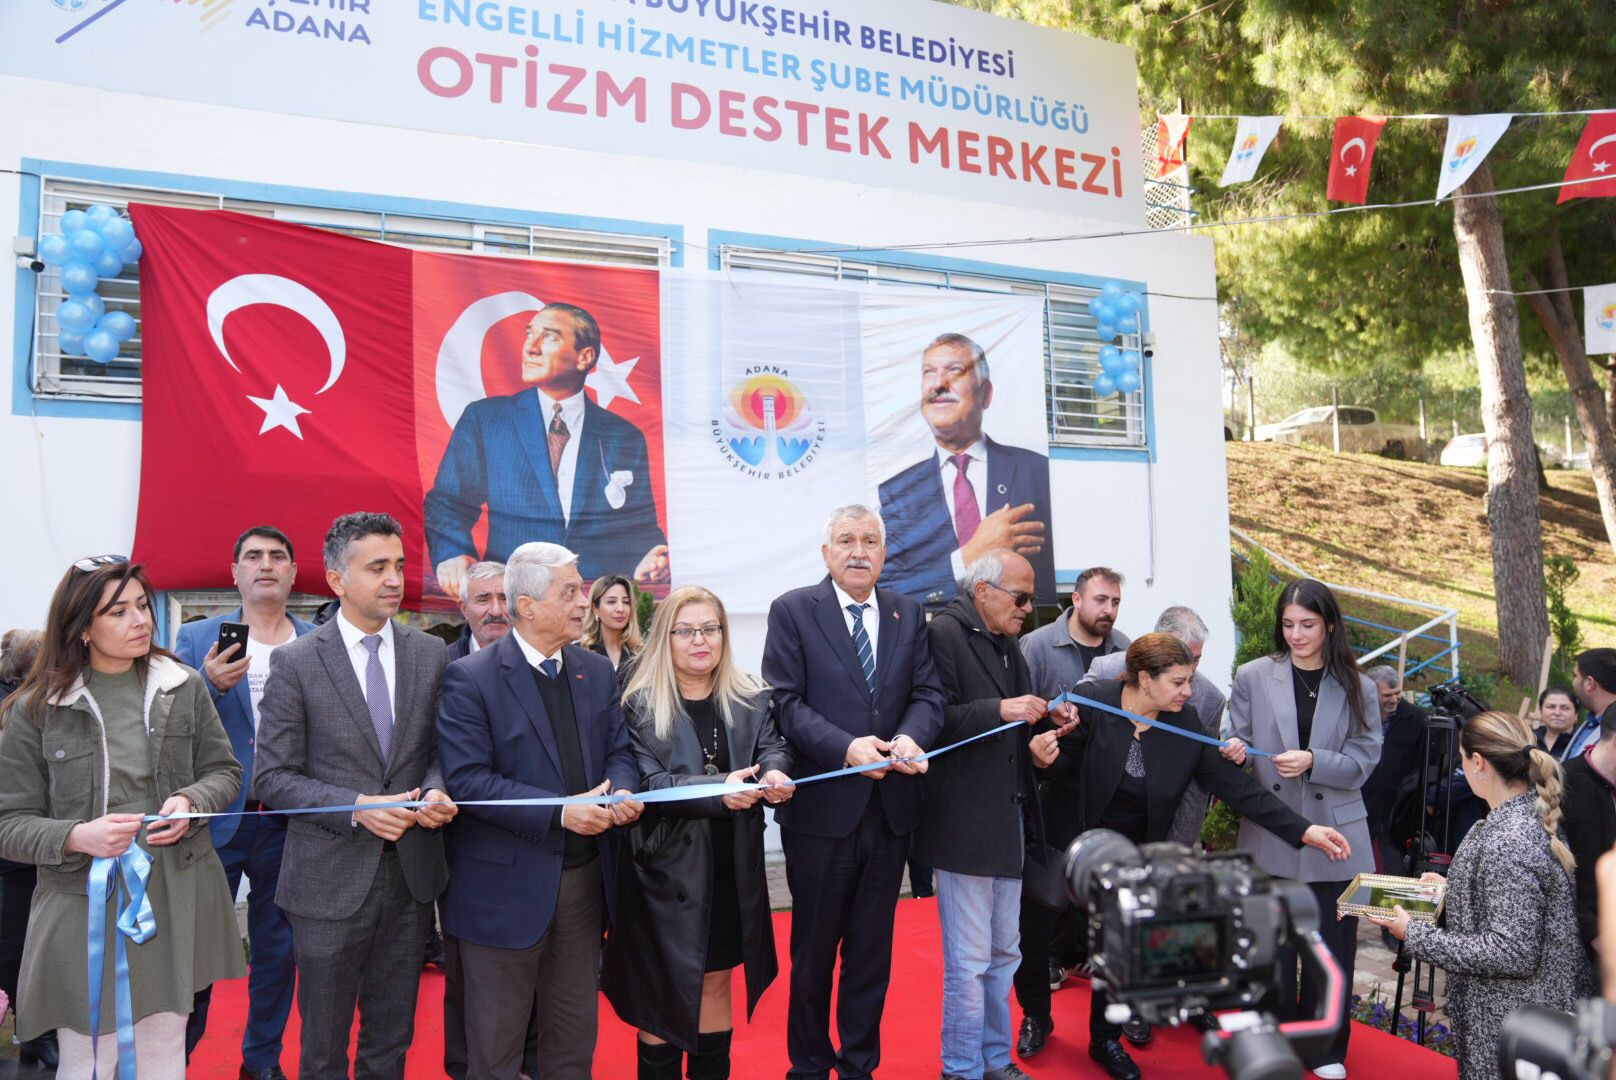 Adana'da Otizm Destek Merkezi açıldı